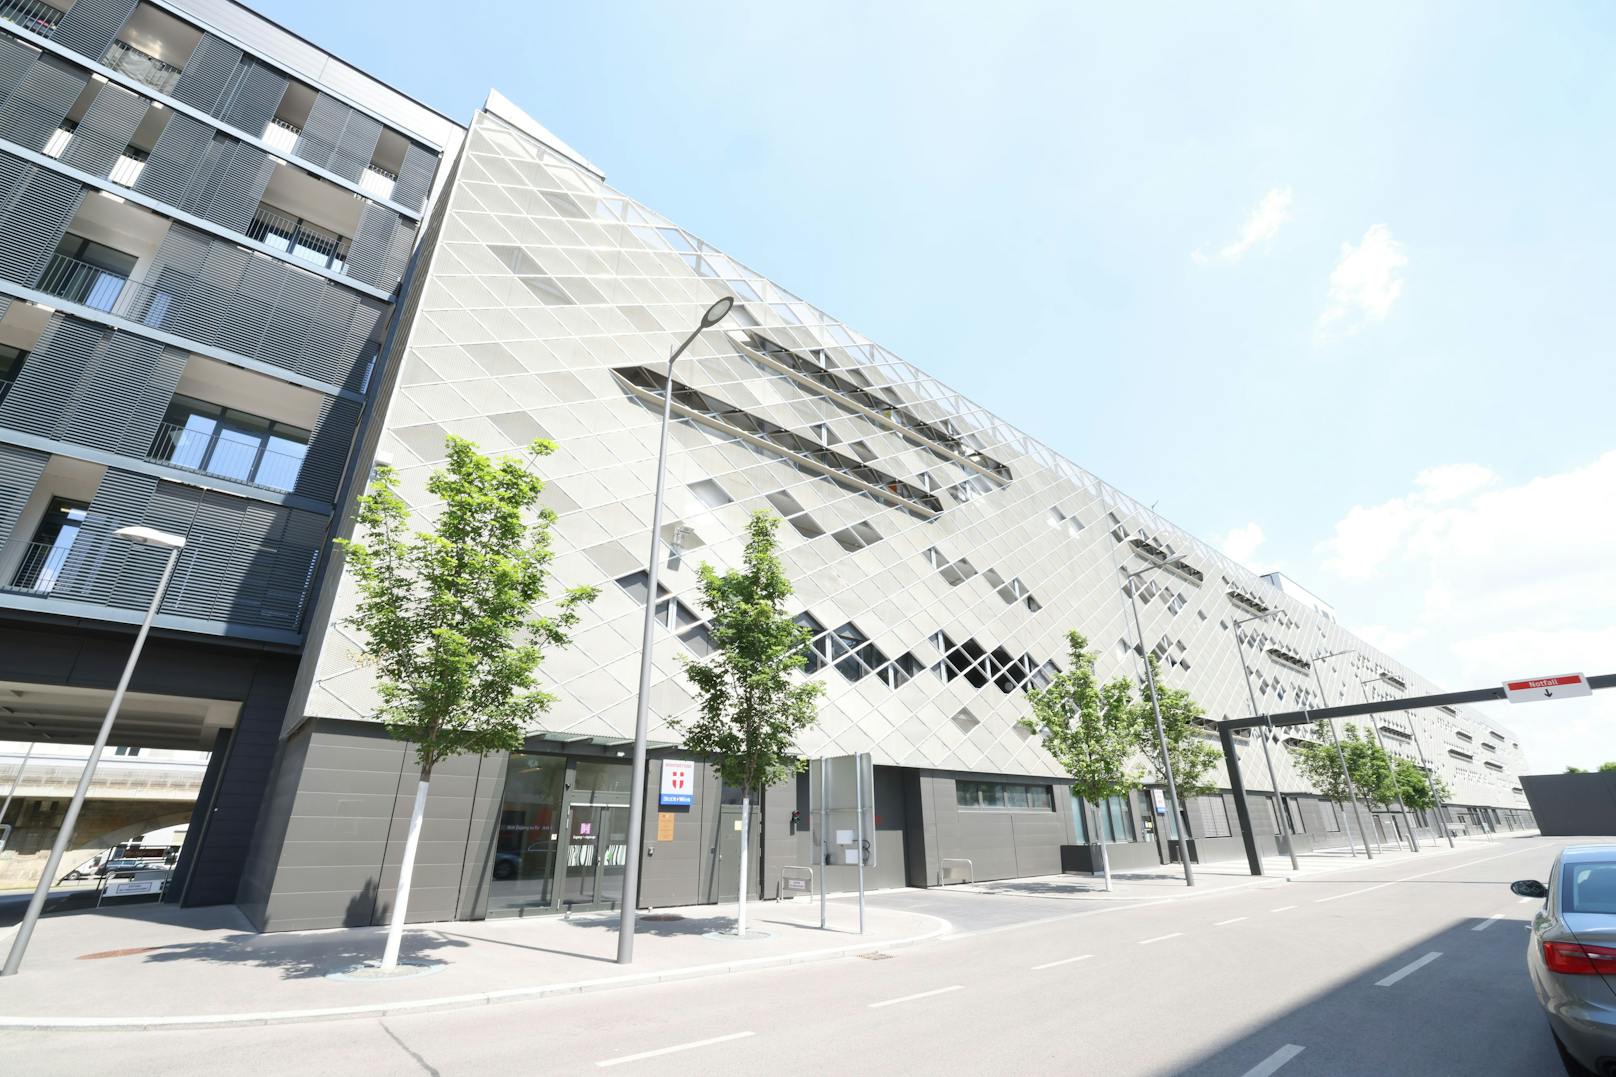 Die Klinik Floridsdorf ist Wiens erstes Spital, das am Dach umweltfreundlichen Sonnenstrom erzeugt.